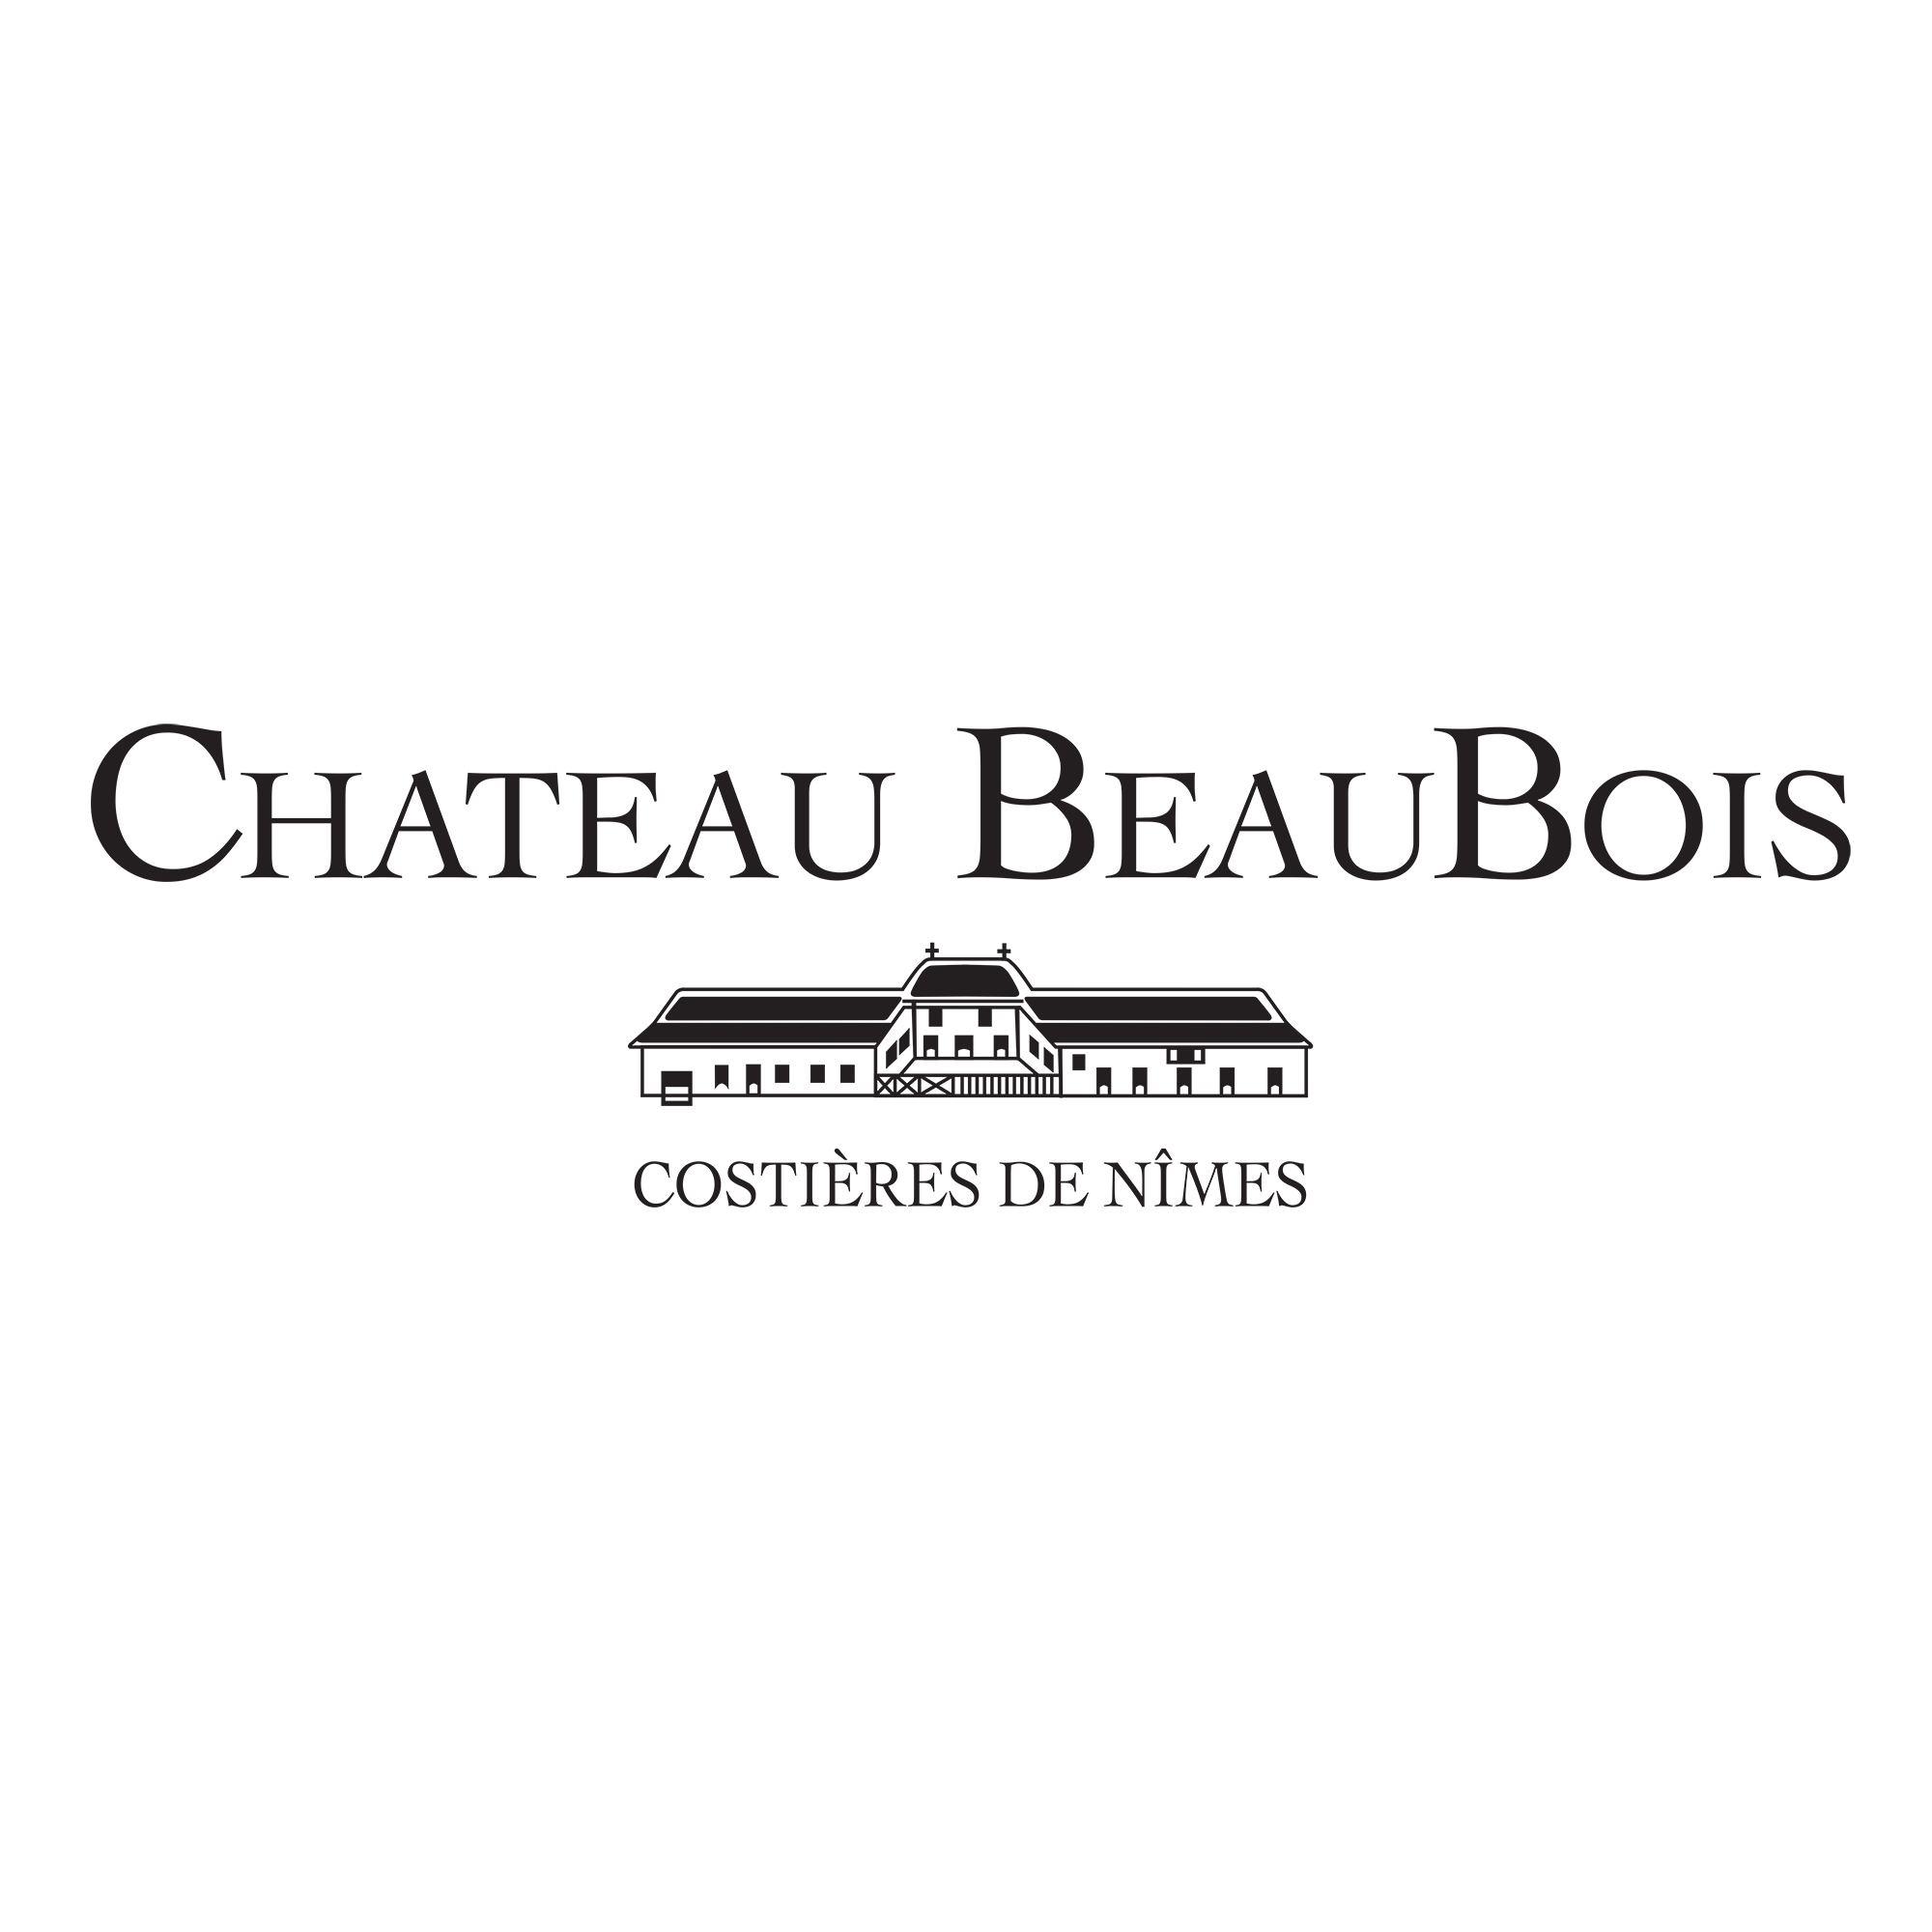 Chateau Beaubois Csostières de Nimes Vin bio